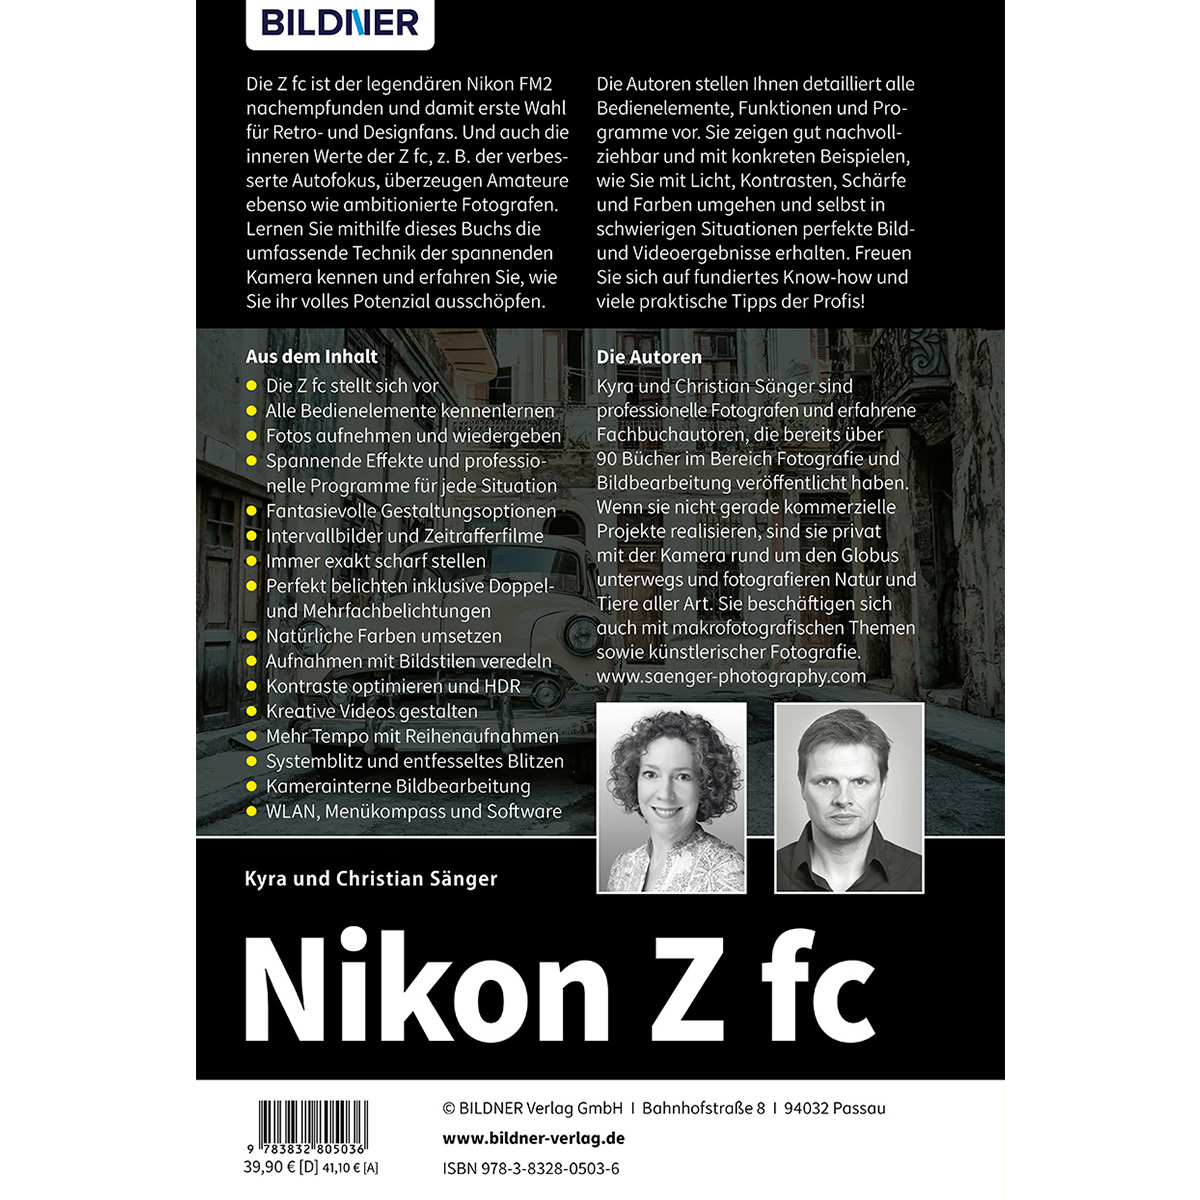 Nikon Z fc - Das Kamera zu Praxisbuch Ihrer umfangreiche